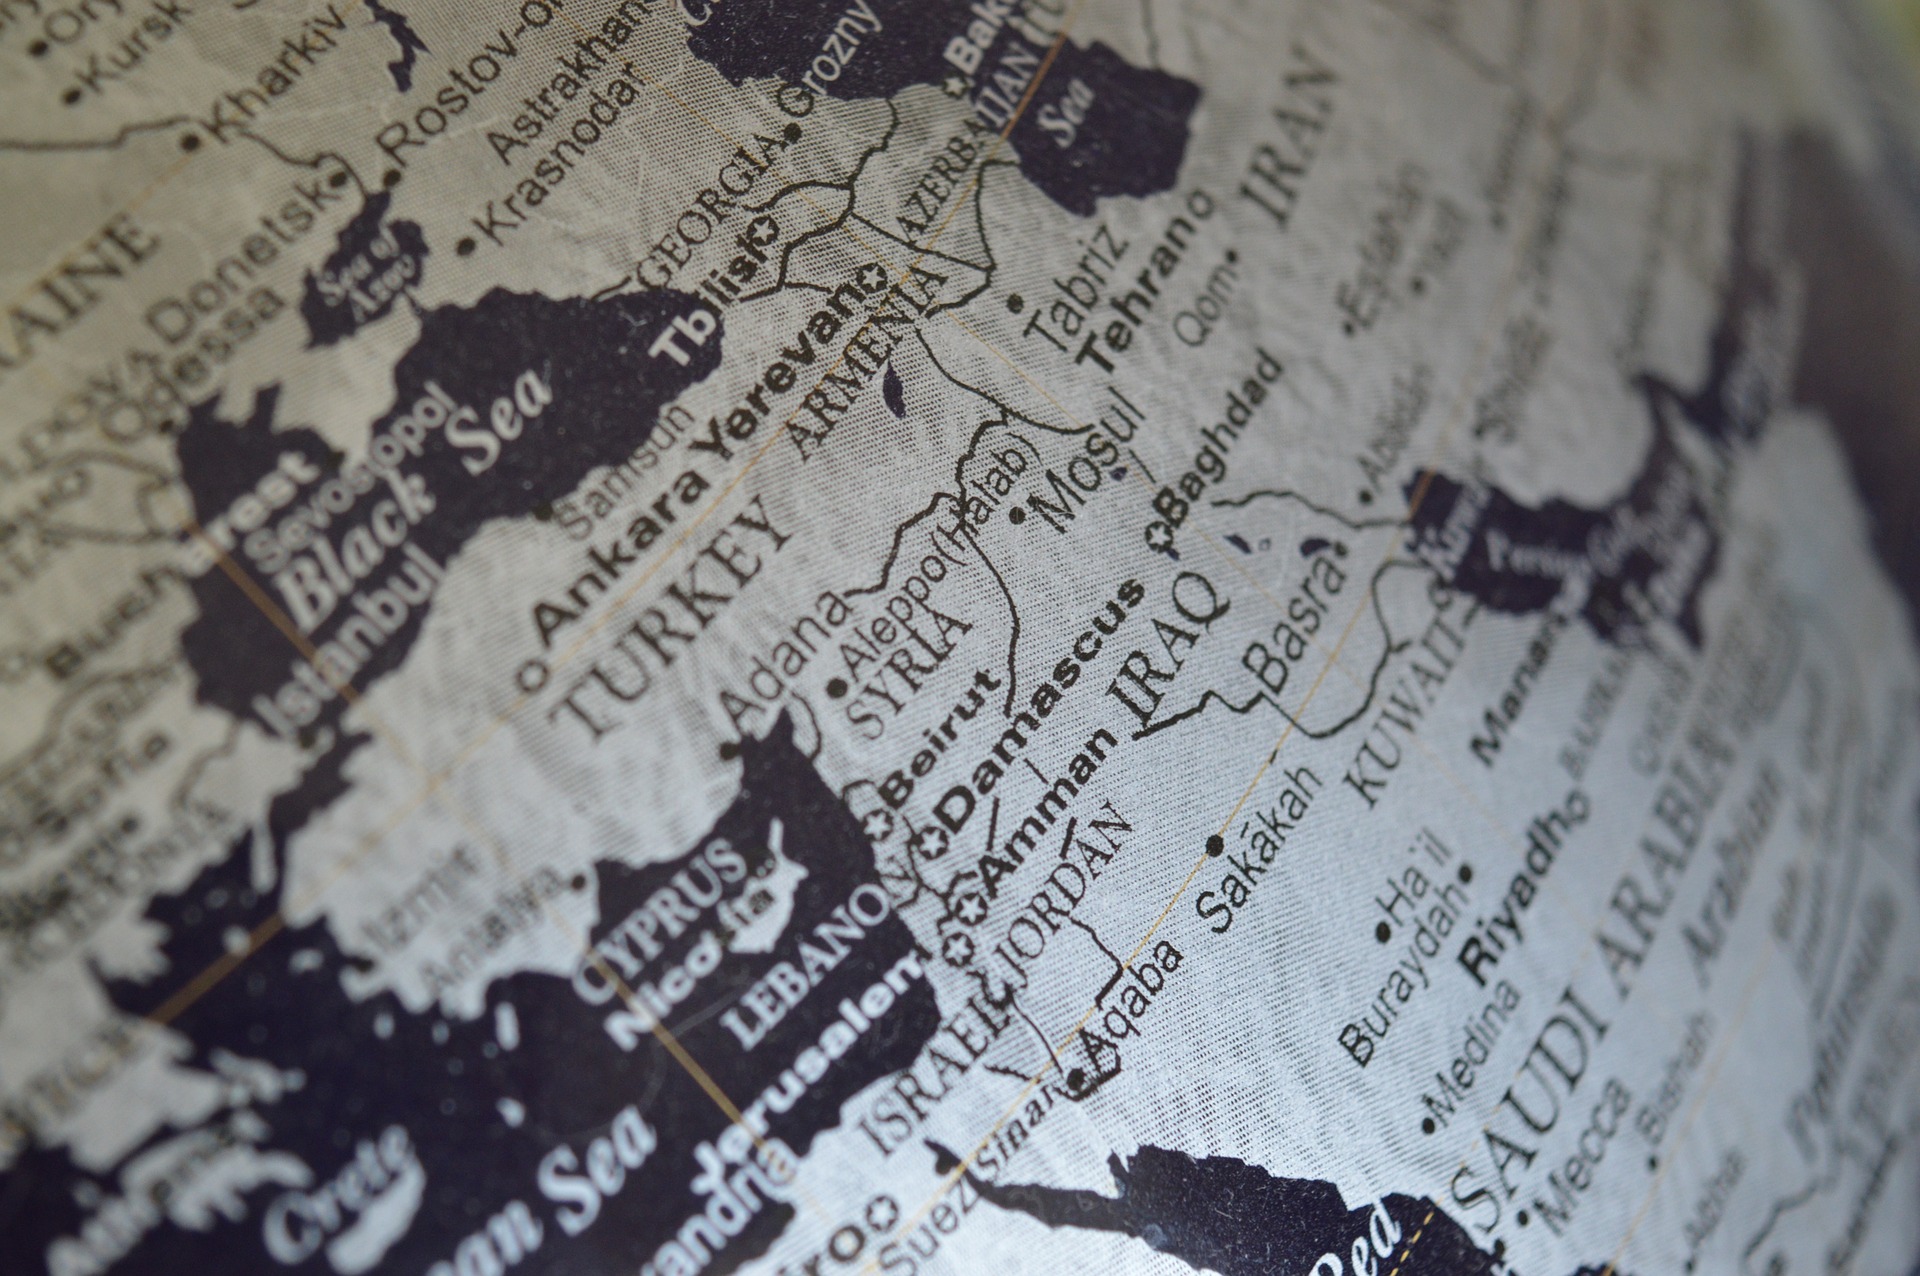 Zum Artikel "Geopolitische Interessen im Syrien-Konflikt: Ein Gastkommentar von Hüseyin Çiçek"